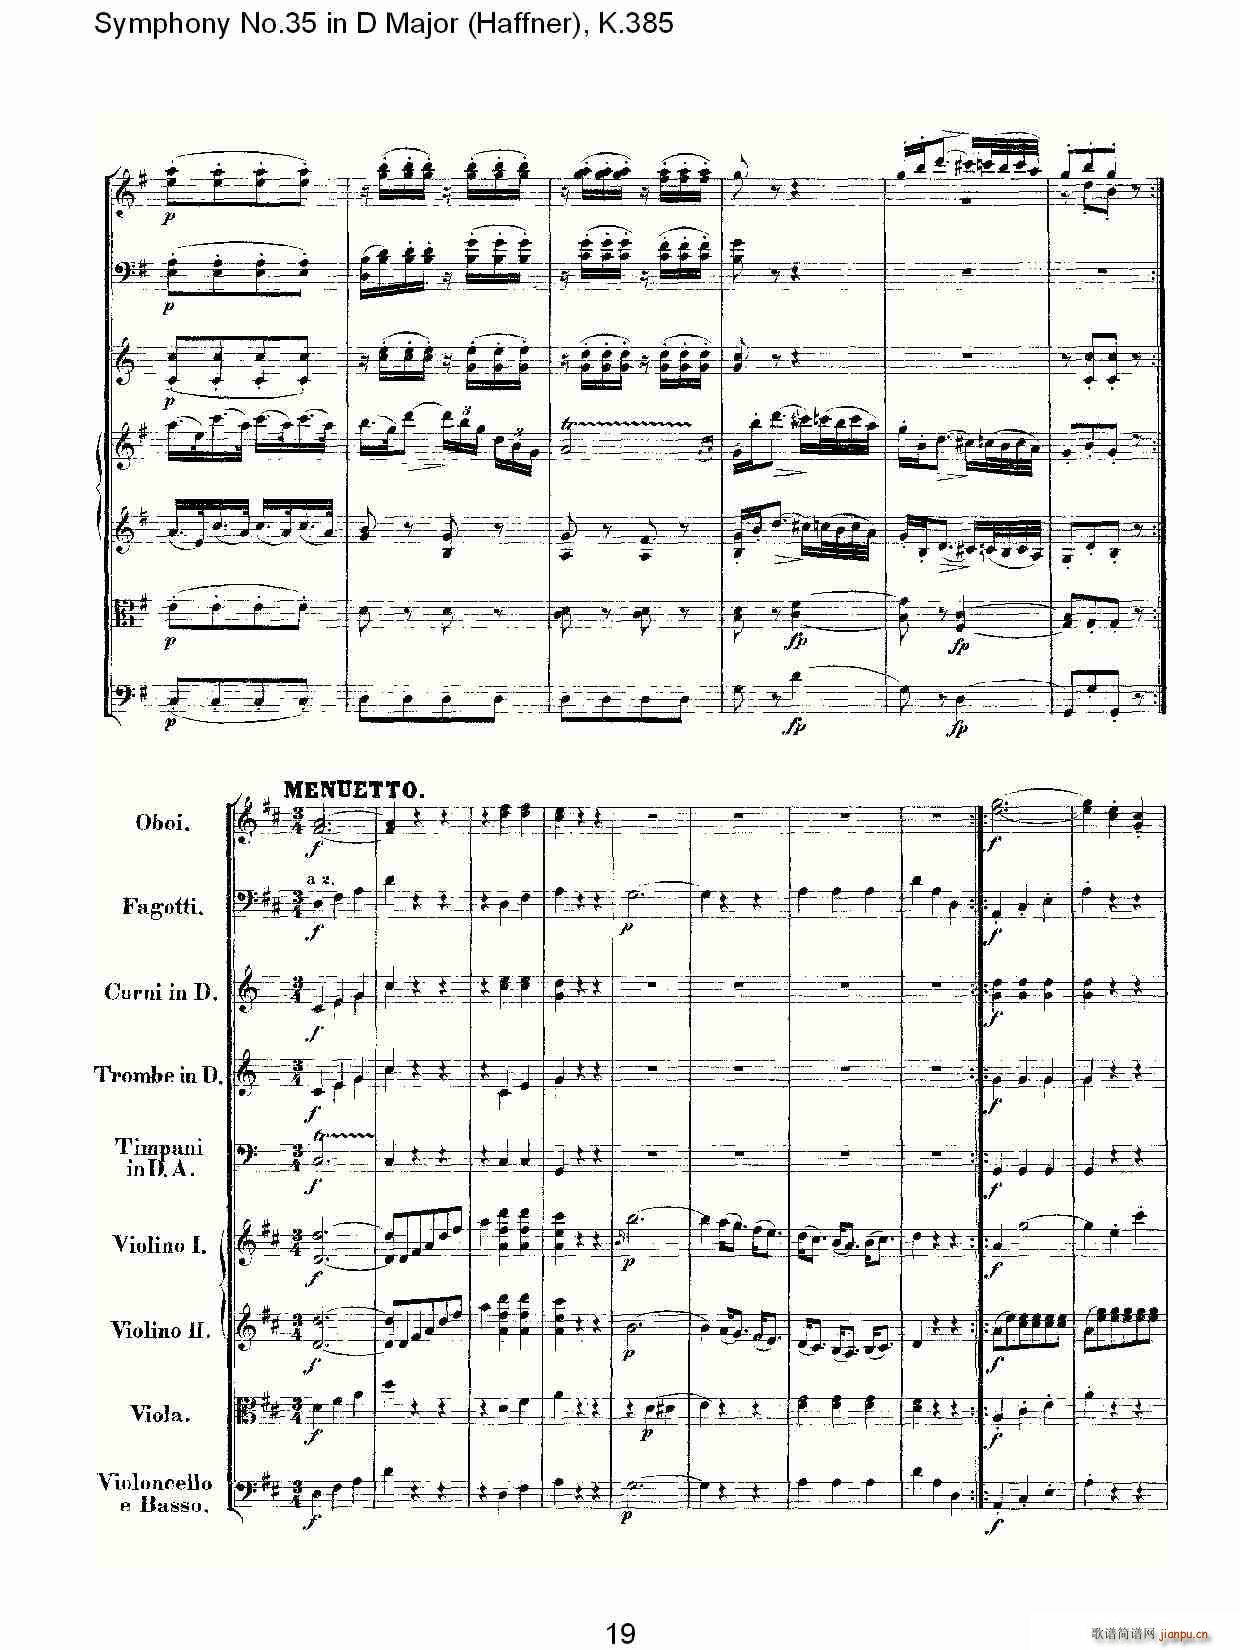 Symphony No.35 in D Major, K.385(ʮּ)19